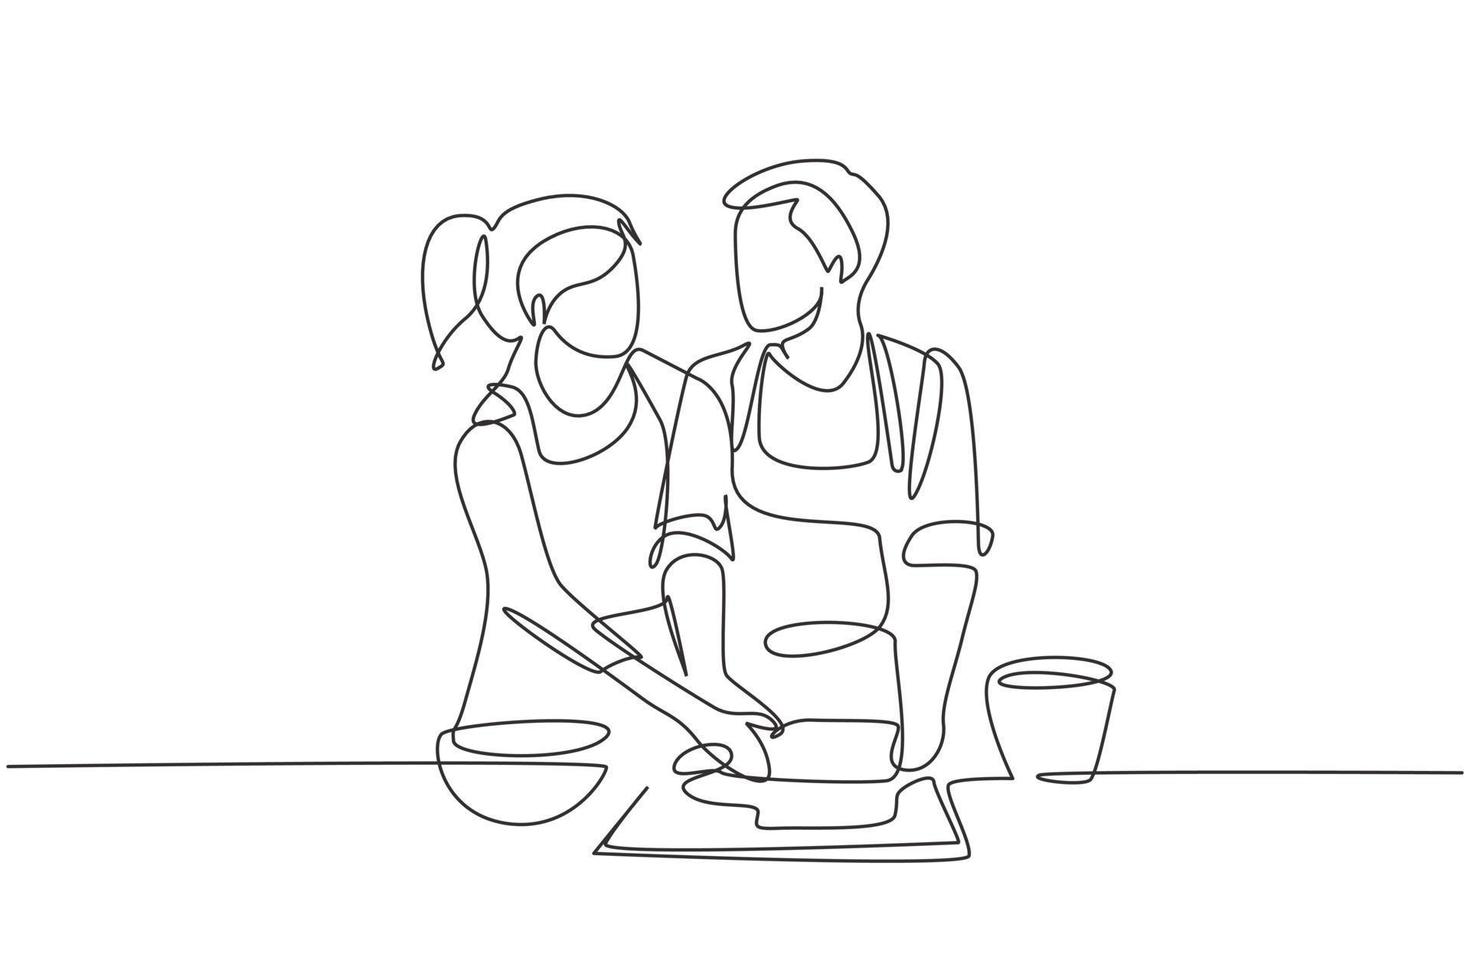 linha única contínua de desenho de casal romântico olhando um para o outro enquanto enrolam a massa macia durante a preparação da massa em uma cozinha aconchegante em casa. ilustração em vetor design gráfico dinâmico de uma linha